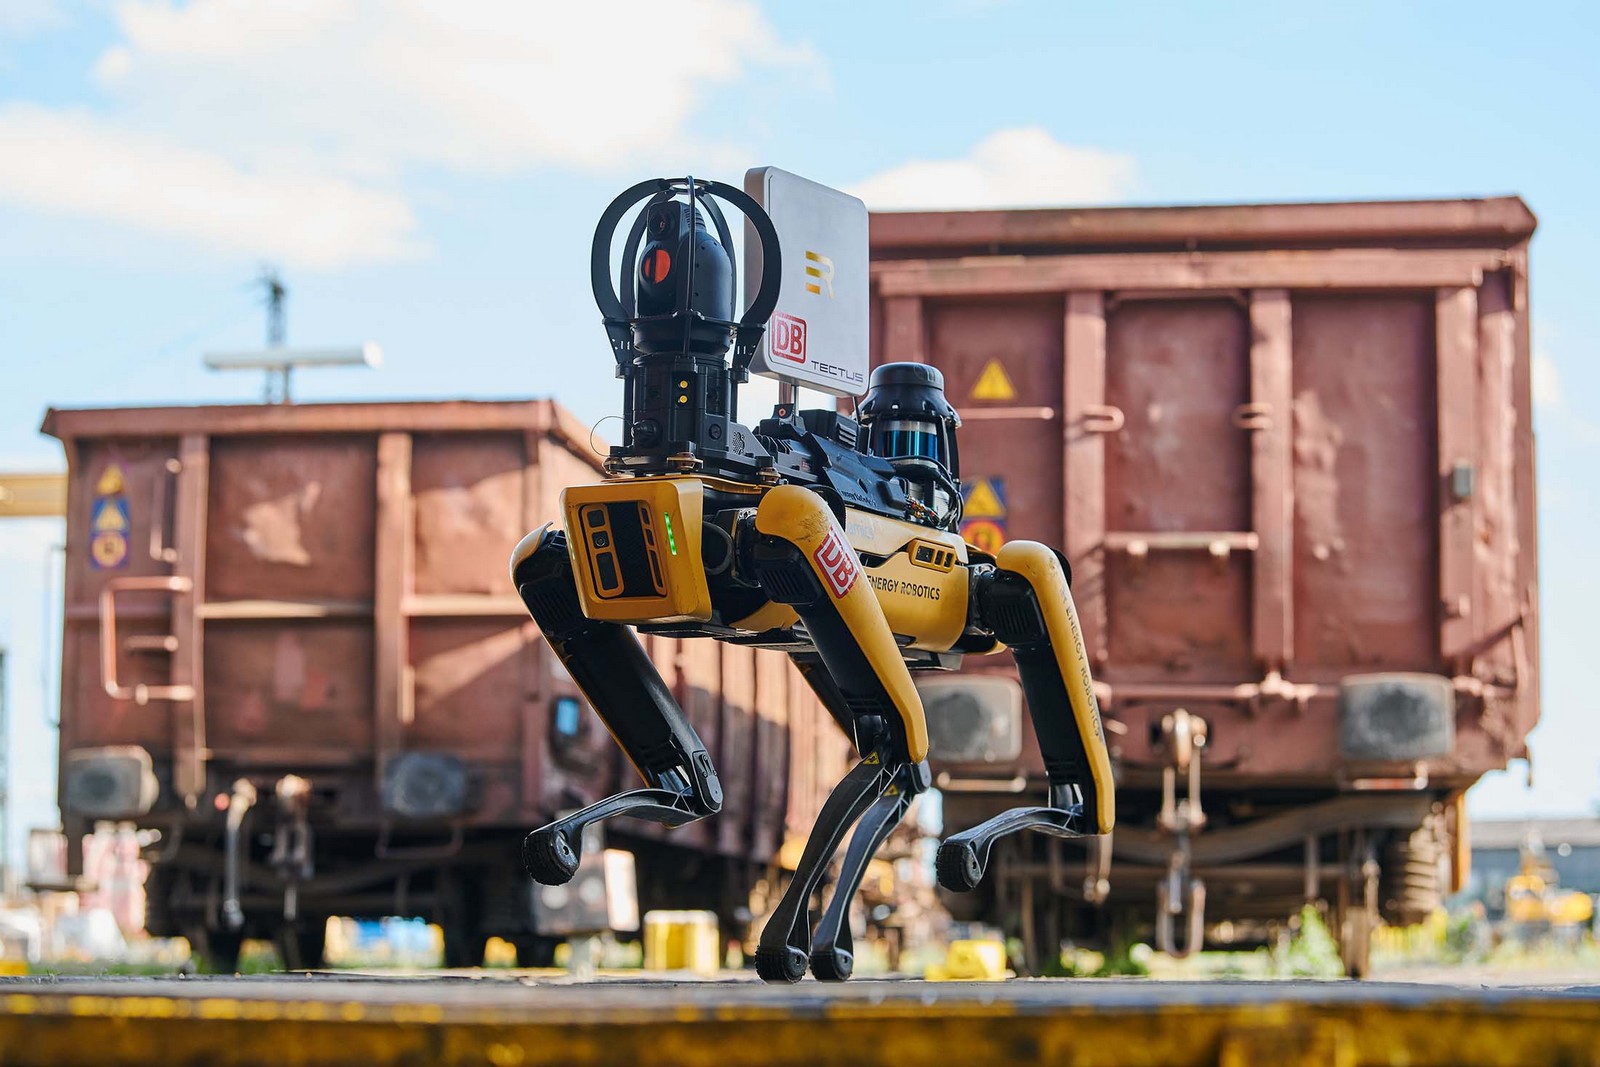  Spot väger 25 kilo, är 84 centimeter hög och kan nå en hastighet på upp till sex kilometer i timmen. Roboten beskrivs av DB Cargo som "extremt robust" och "mer smidig än någon annan robot som har kommit tidigare". Foto: DB Cargo.